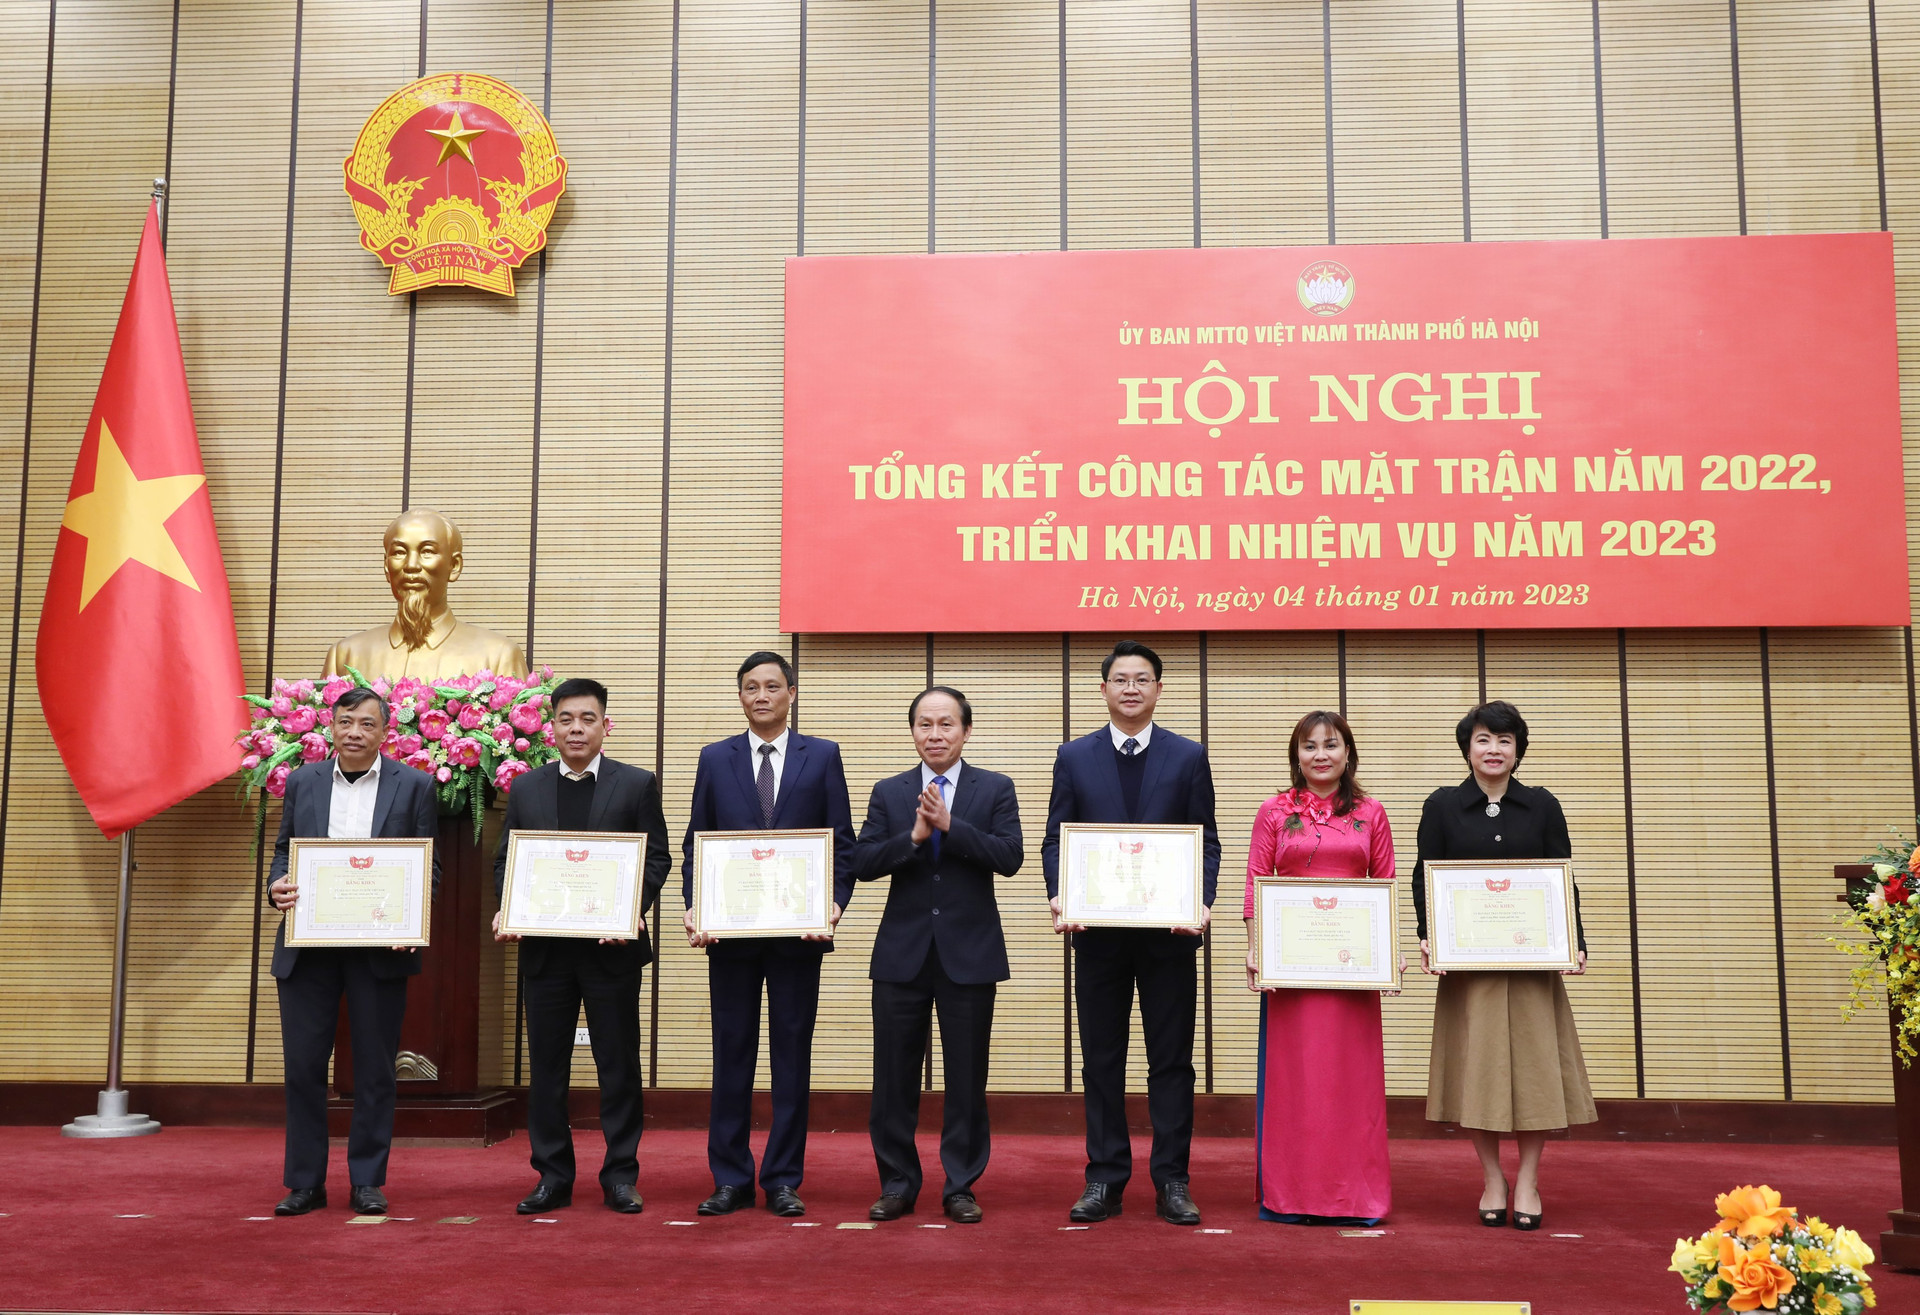 Phó Chủ tịch - Tổng Thư ký Lê Tiến Châu tặng bằng khen của Trung ương cho 6 tập thể vì có thành tích xuất sắc trong công tác Mặt trận.